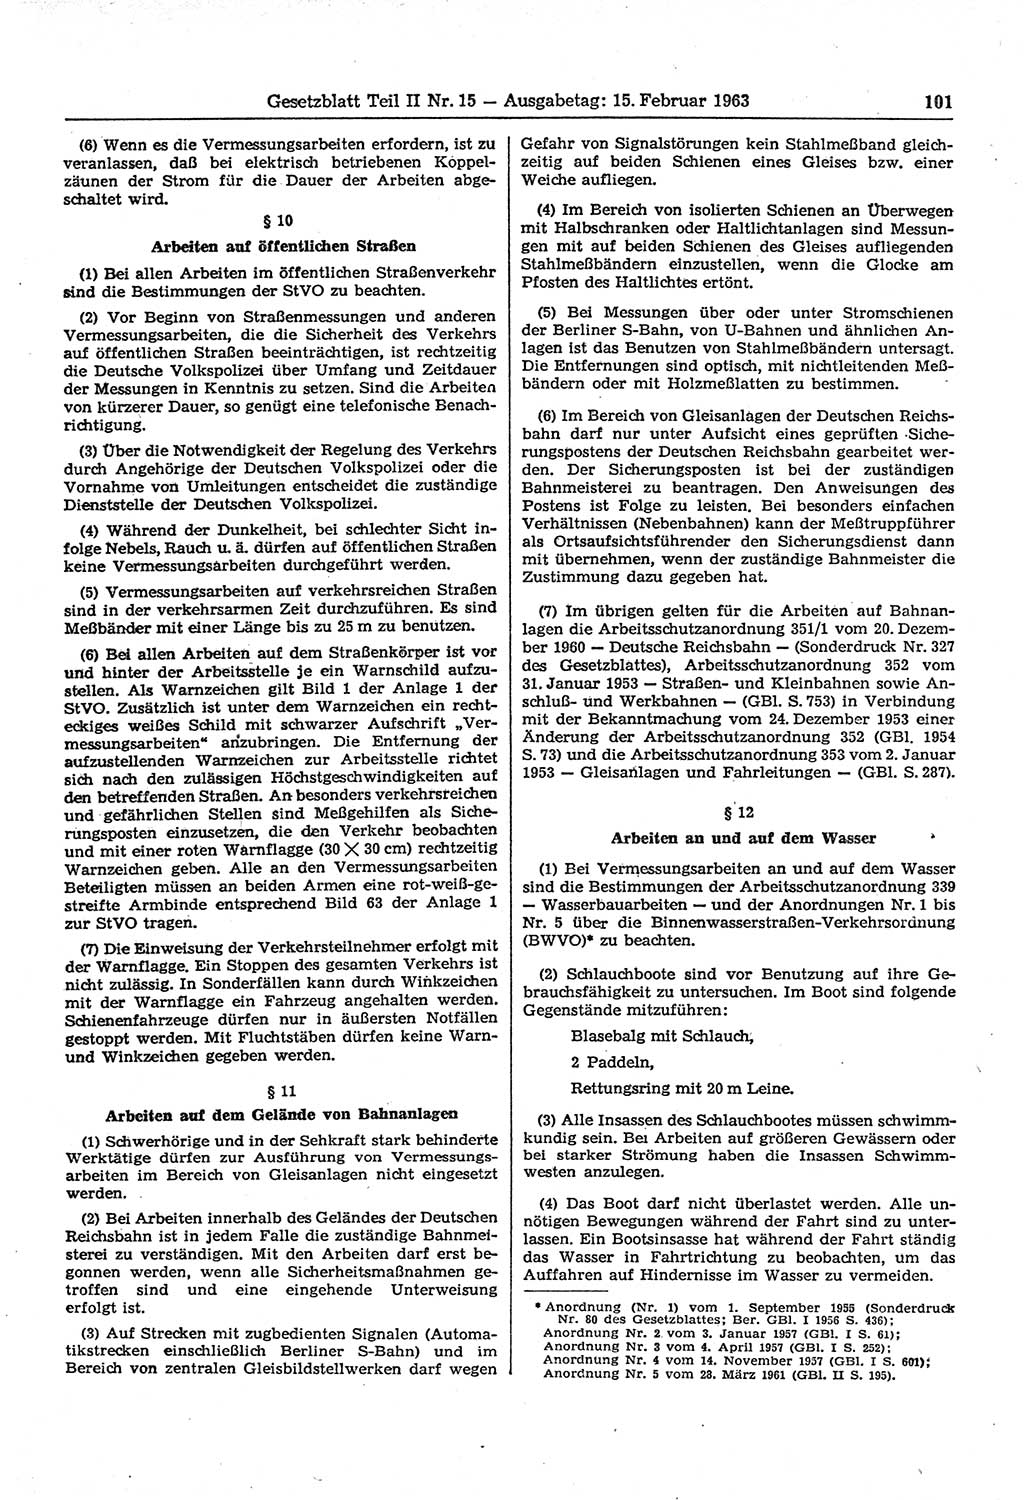 Gesetzblatt (GBl.) der Deutschen Demokratischen Republik (DDR) Teil ⅠⅠ 1963, Seite 101 (GBl. DDR ⅠⅠ 1963, S. 101)